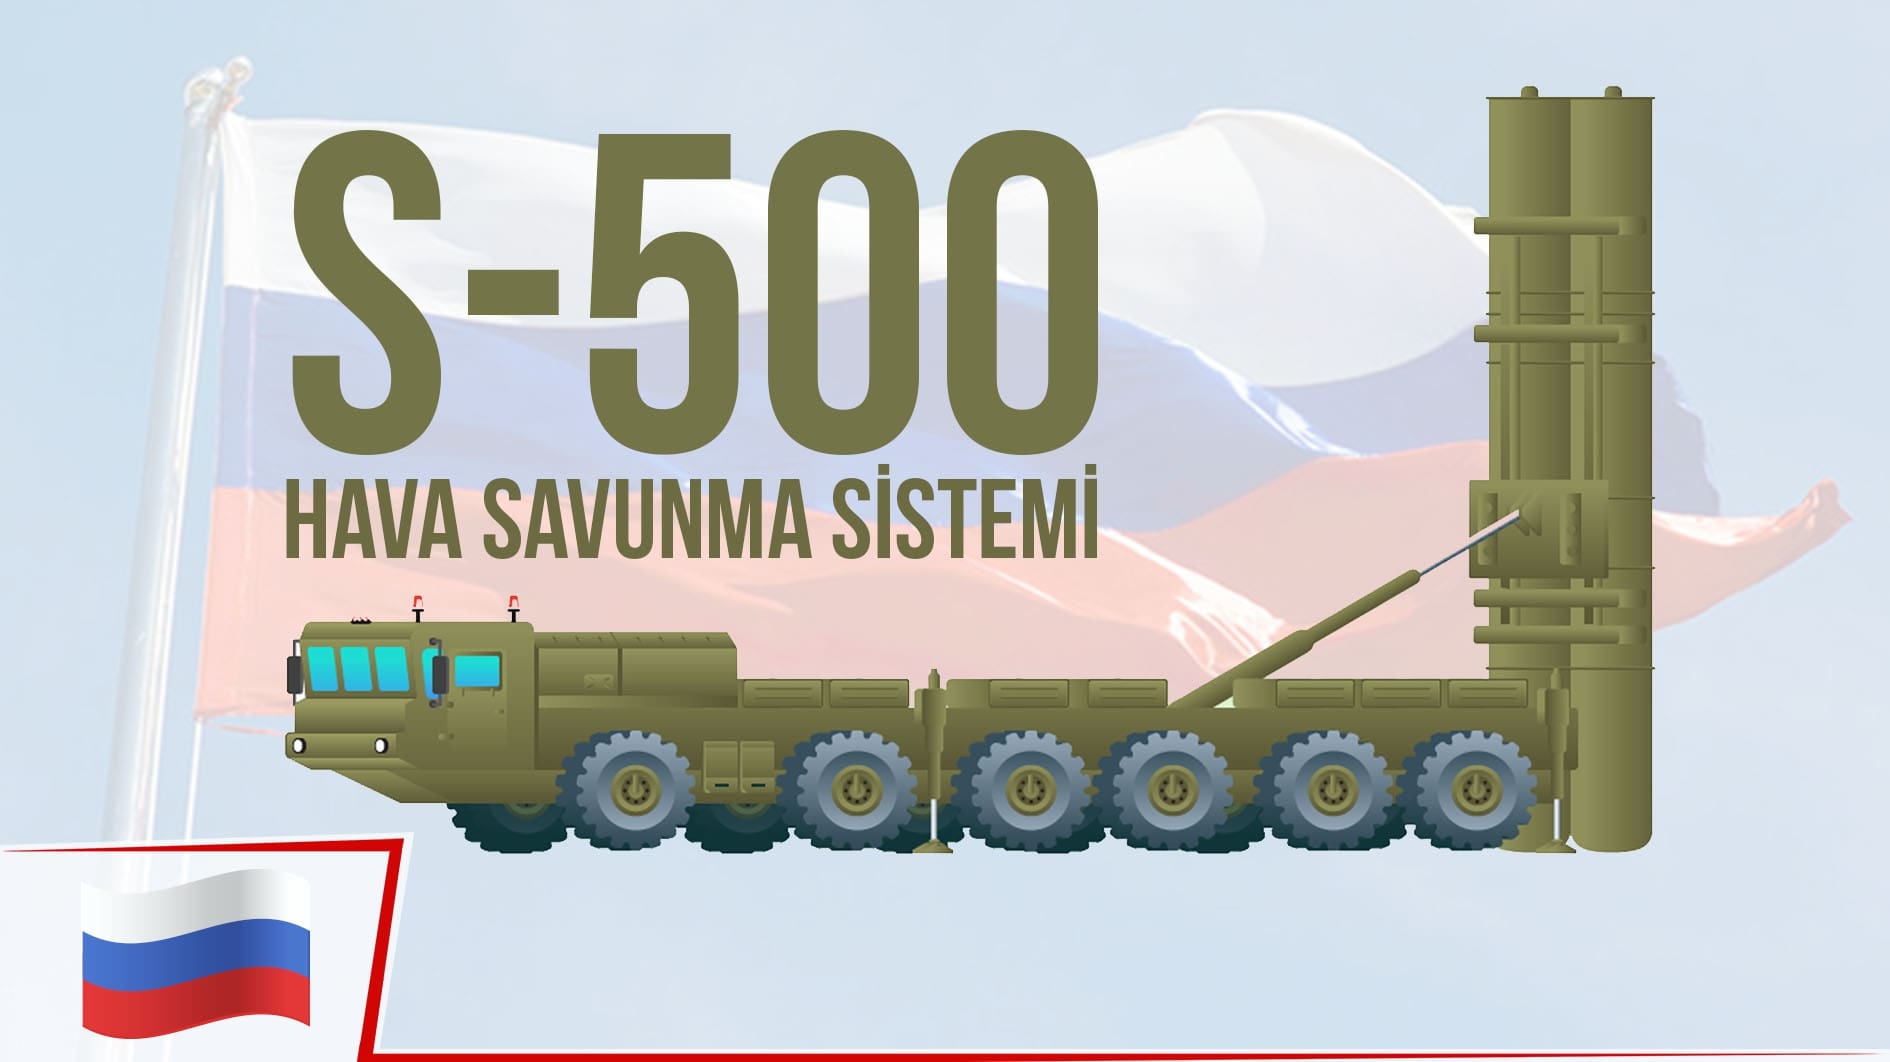 Rusya'nın yeni nesil hava savunma sistemi S-500 